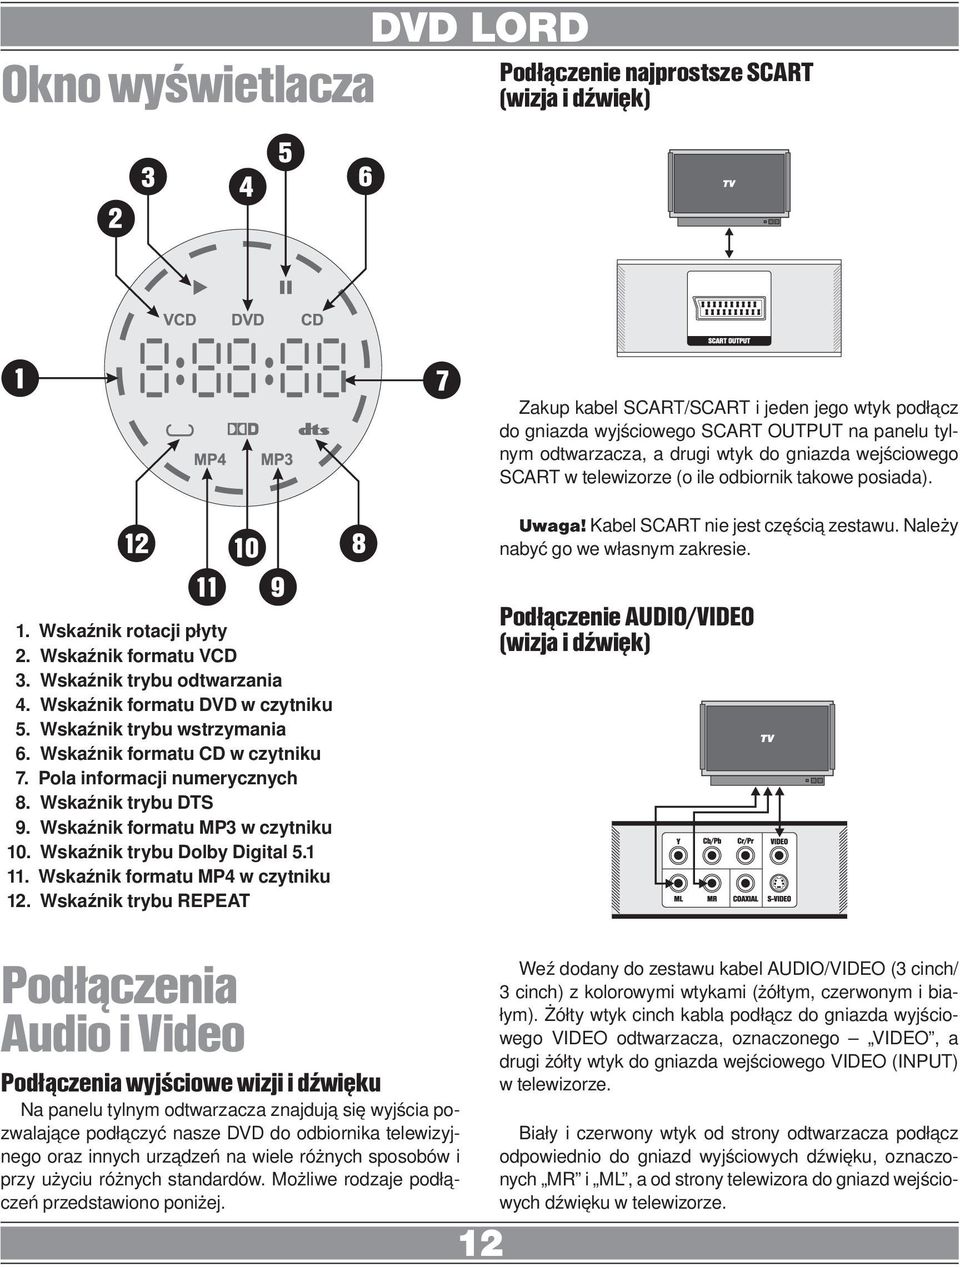 Wskaźnik formatu VCD 3. Wskaźnik trybu odtwarzania 4. Wskaźnik formatu DVD w czytniku 5. Wskaźnik trybu wstrzymania 6. Wskaźnik formatu CD w czytniku 7. Pola informacji numerycznych 8.